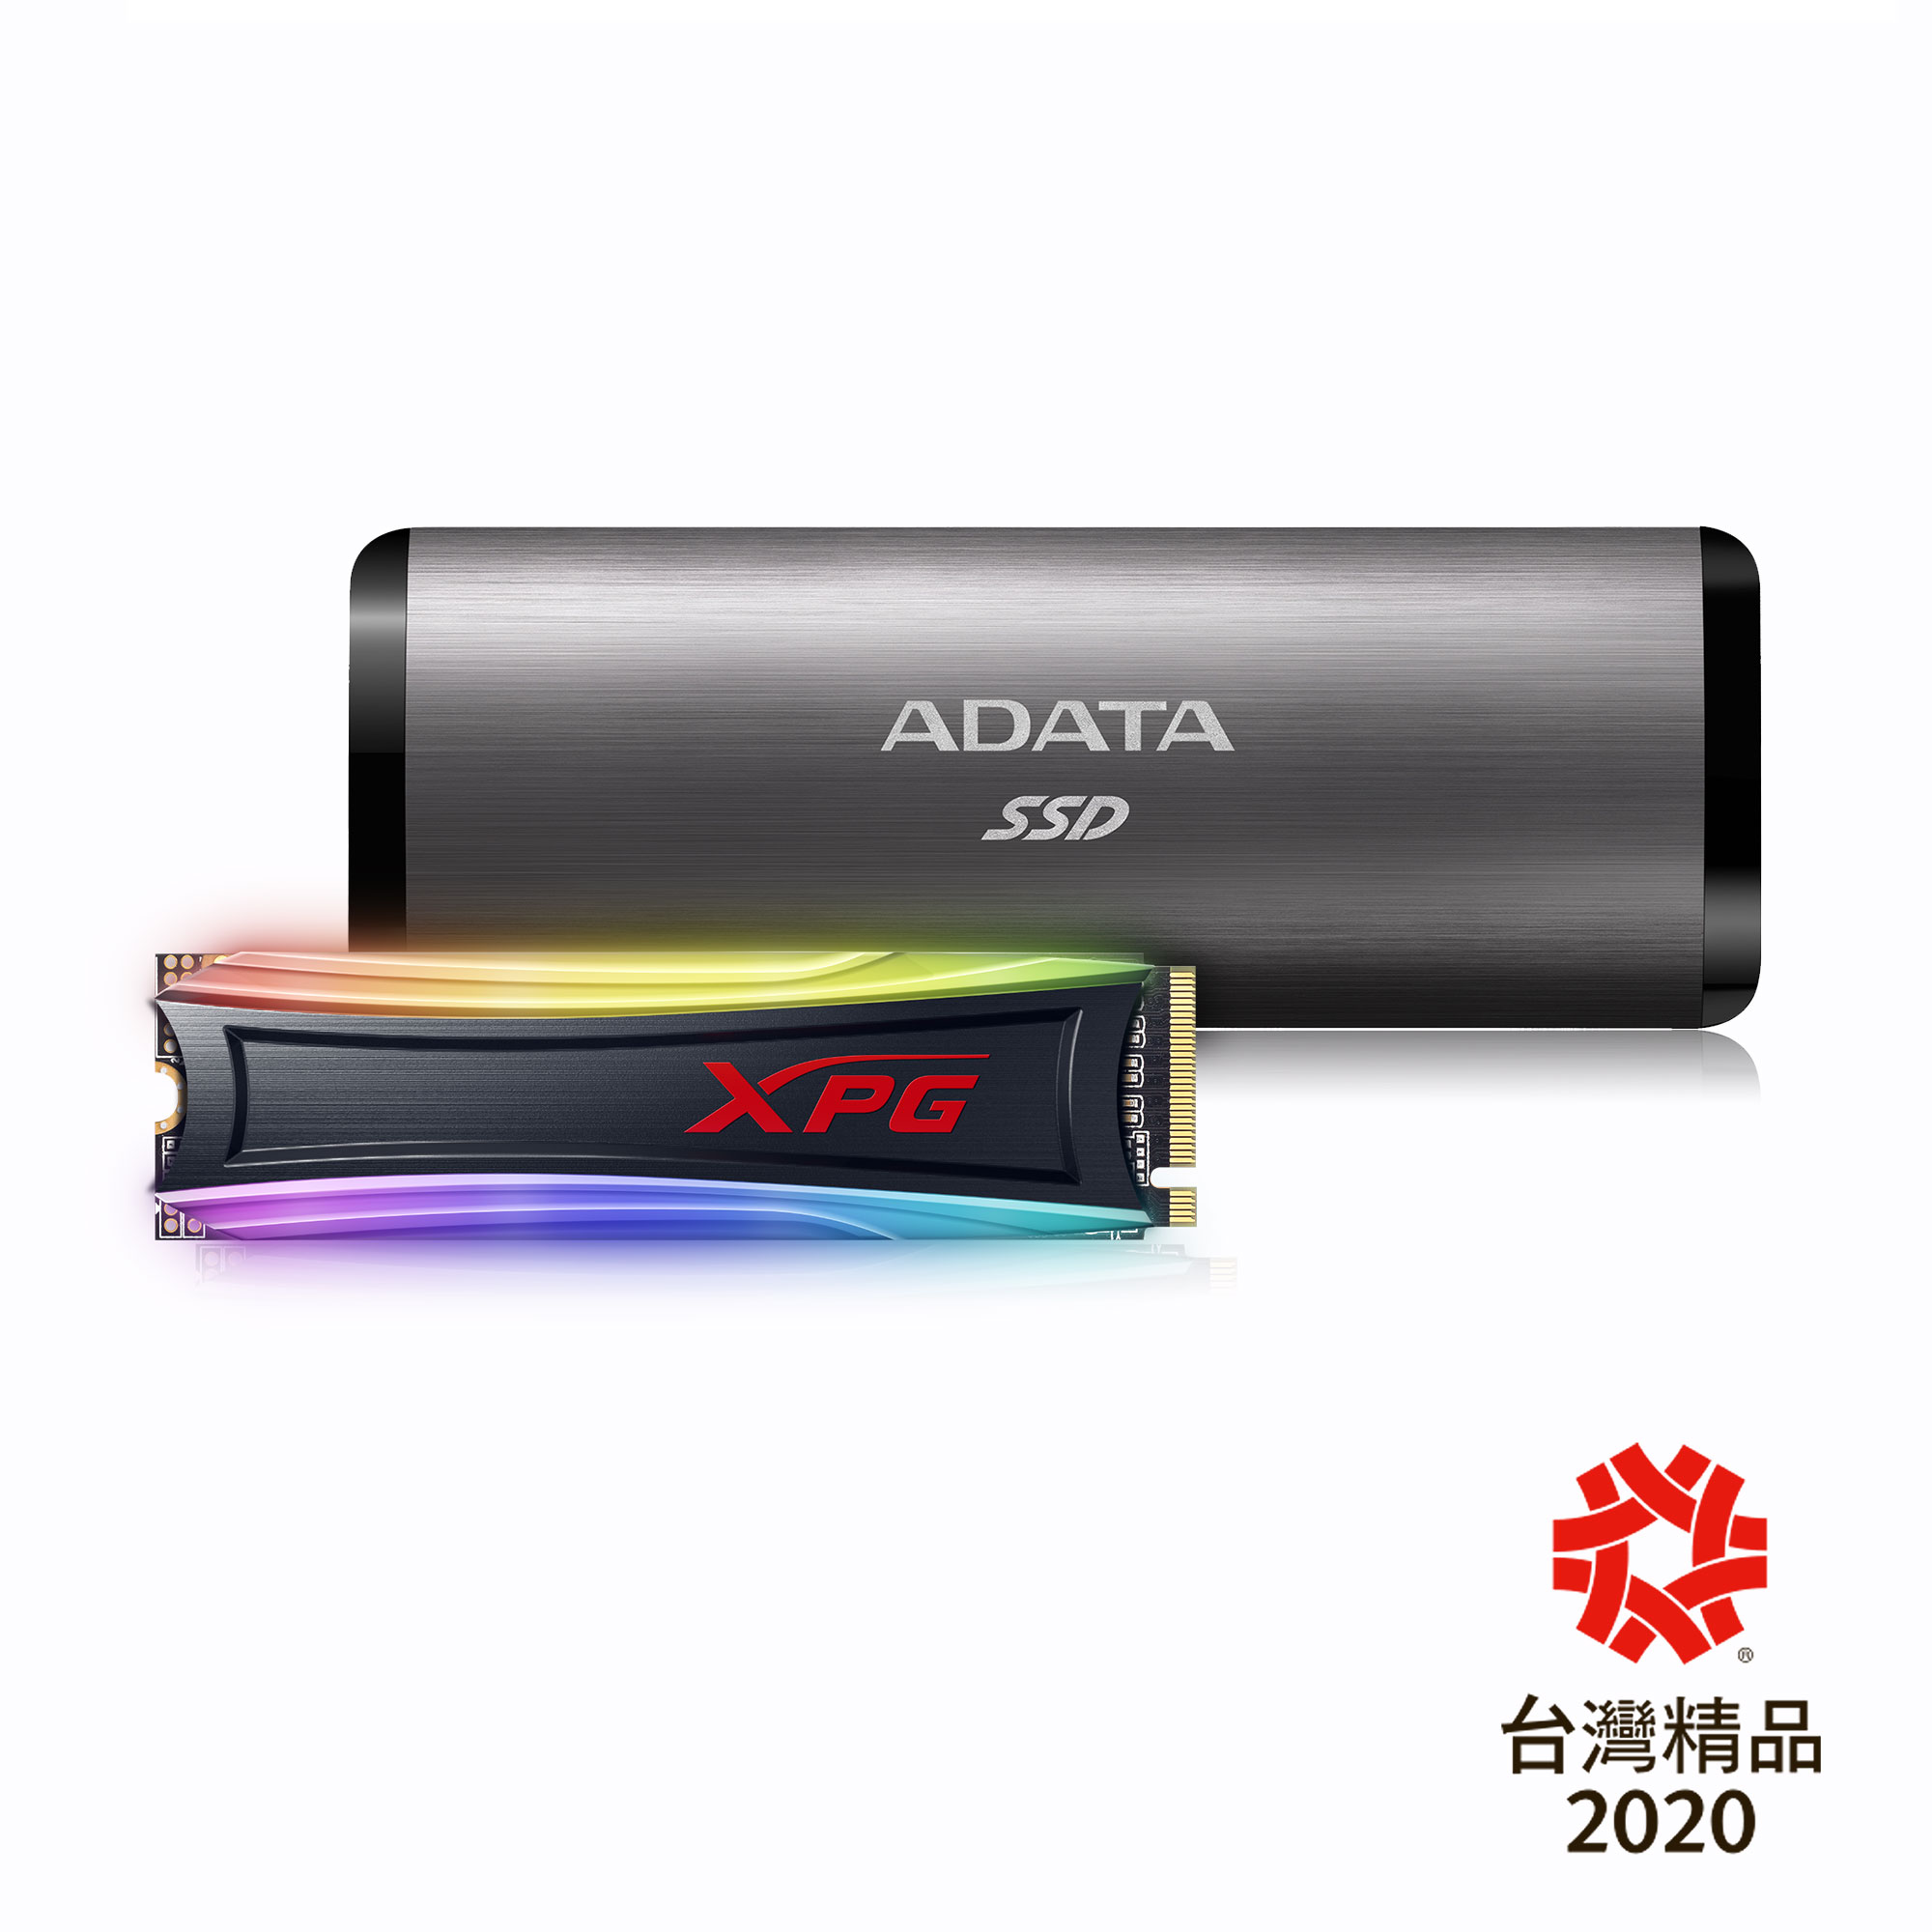 【快訊報報】ADATA 威剛用創新贏得掌聲 RGB電競固態硬碟、外接式固態硬碟 榮獲台灣精品肯定 - 固態硬碟 - 科技狗 3C DOG